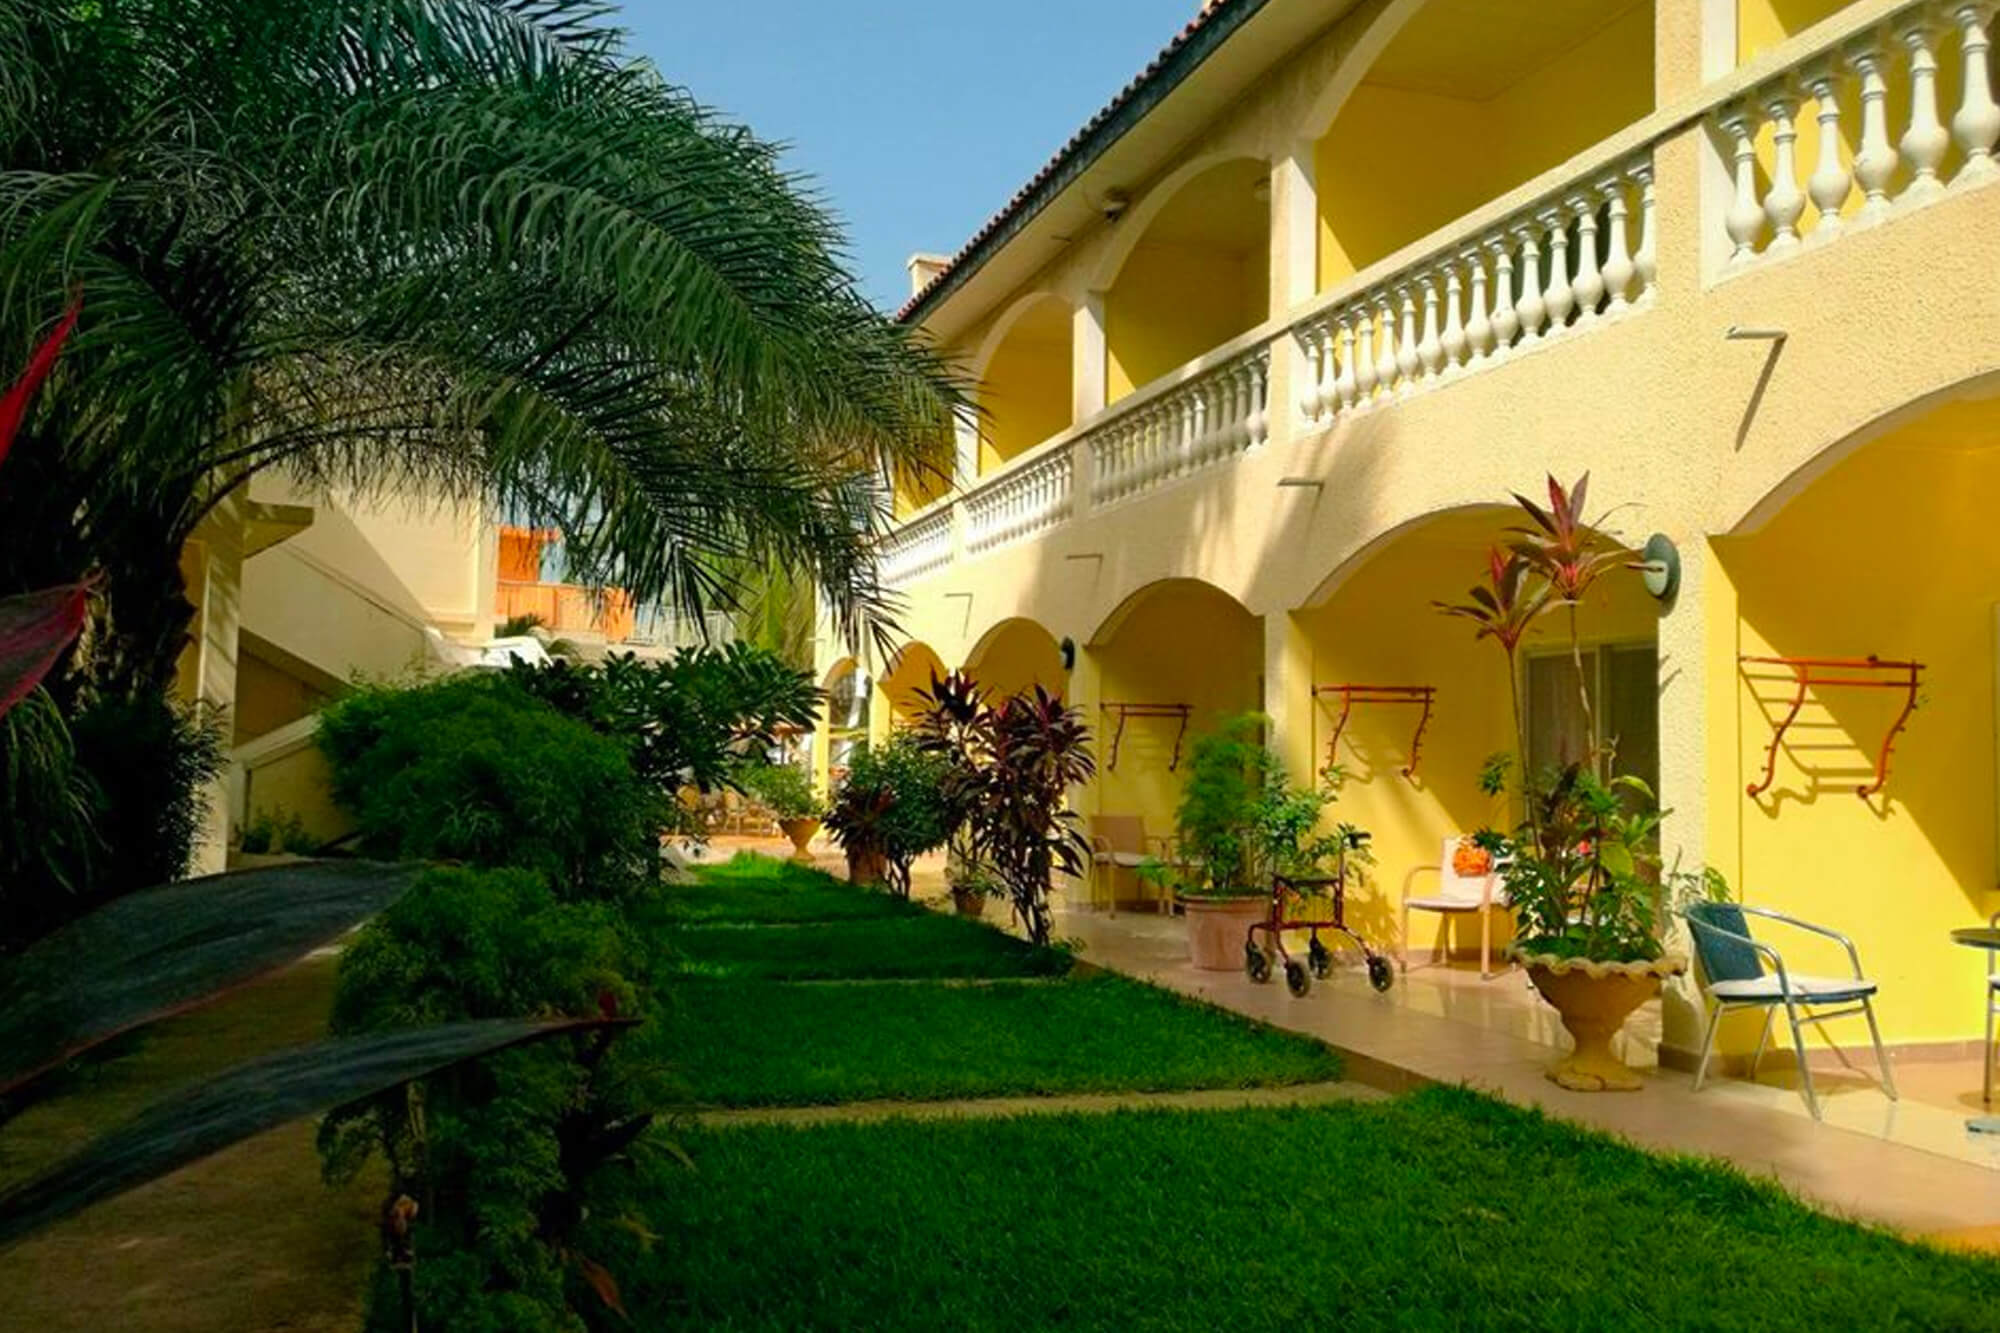 Accommodaties van het Cape Point hotel in Gambia